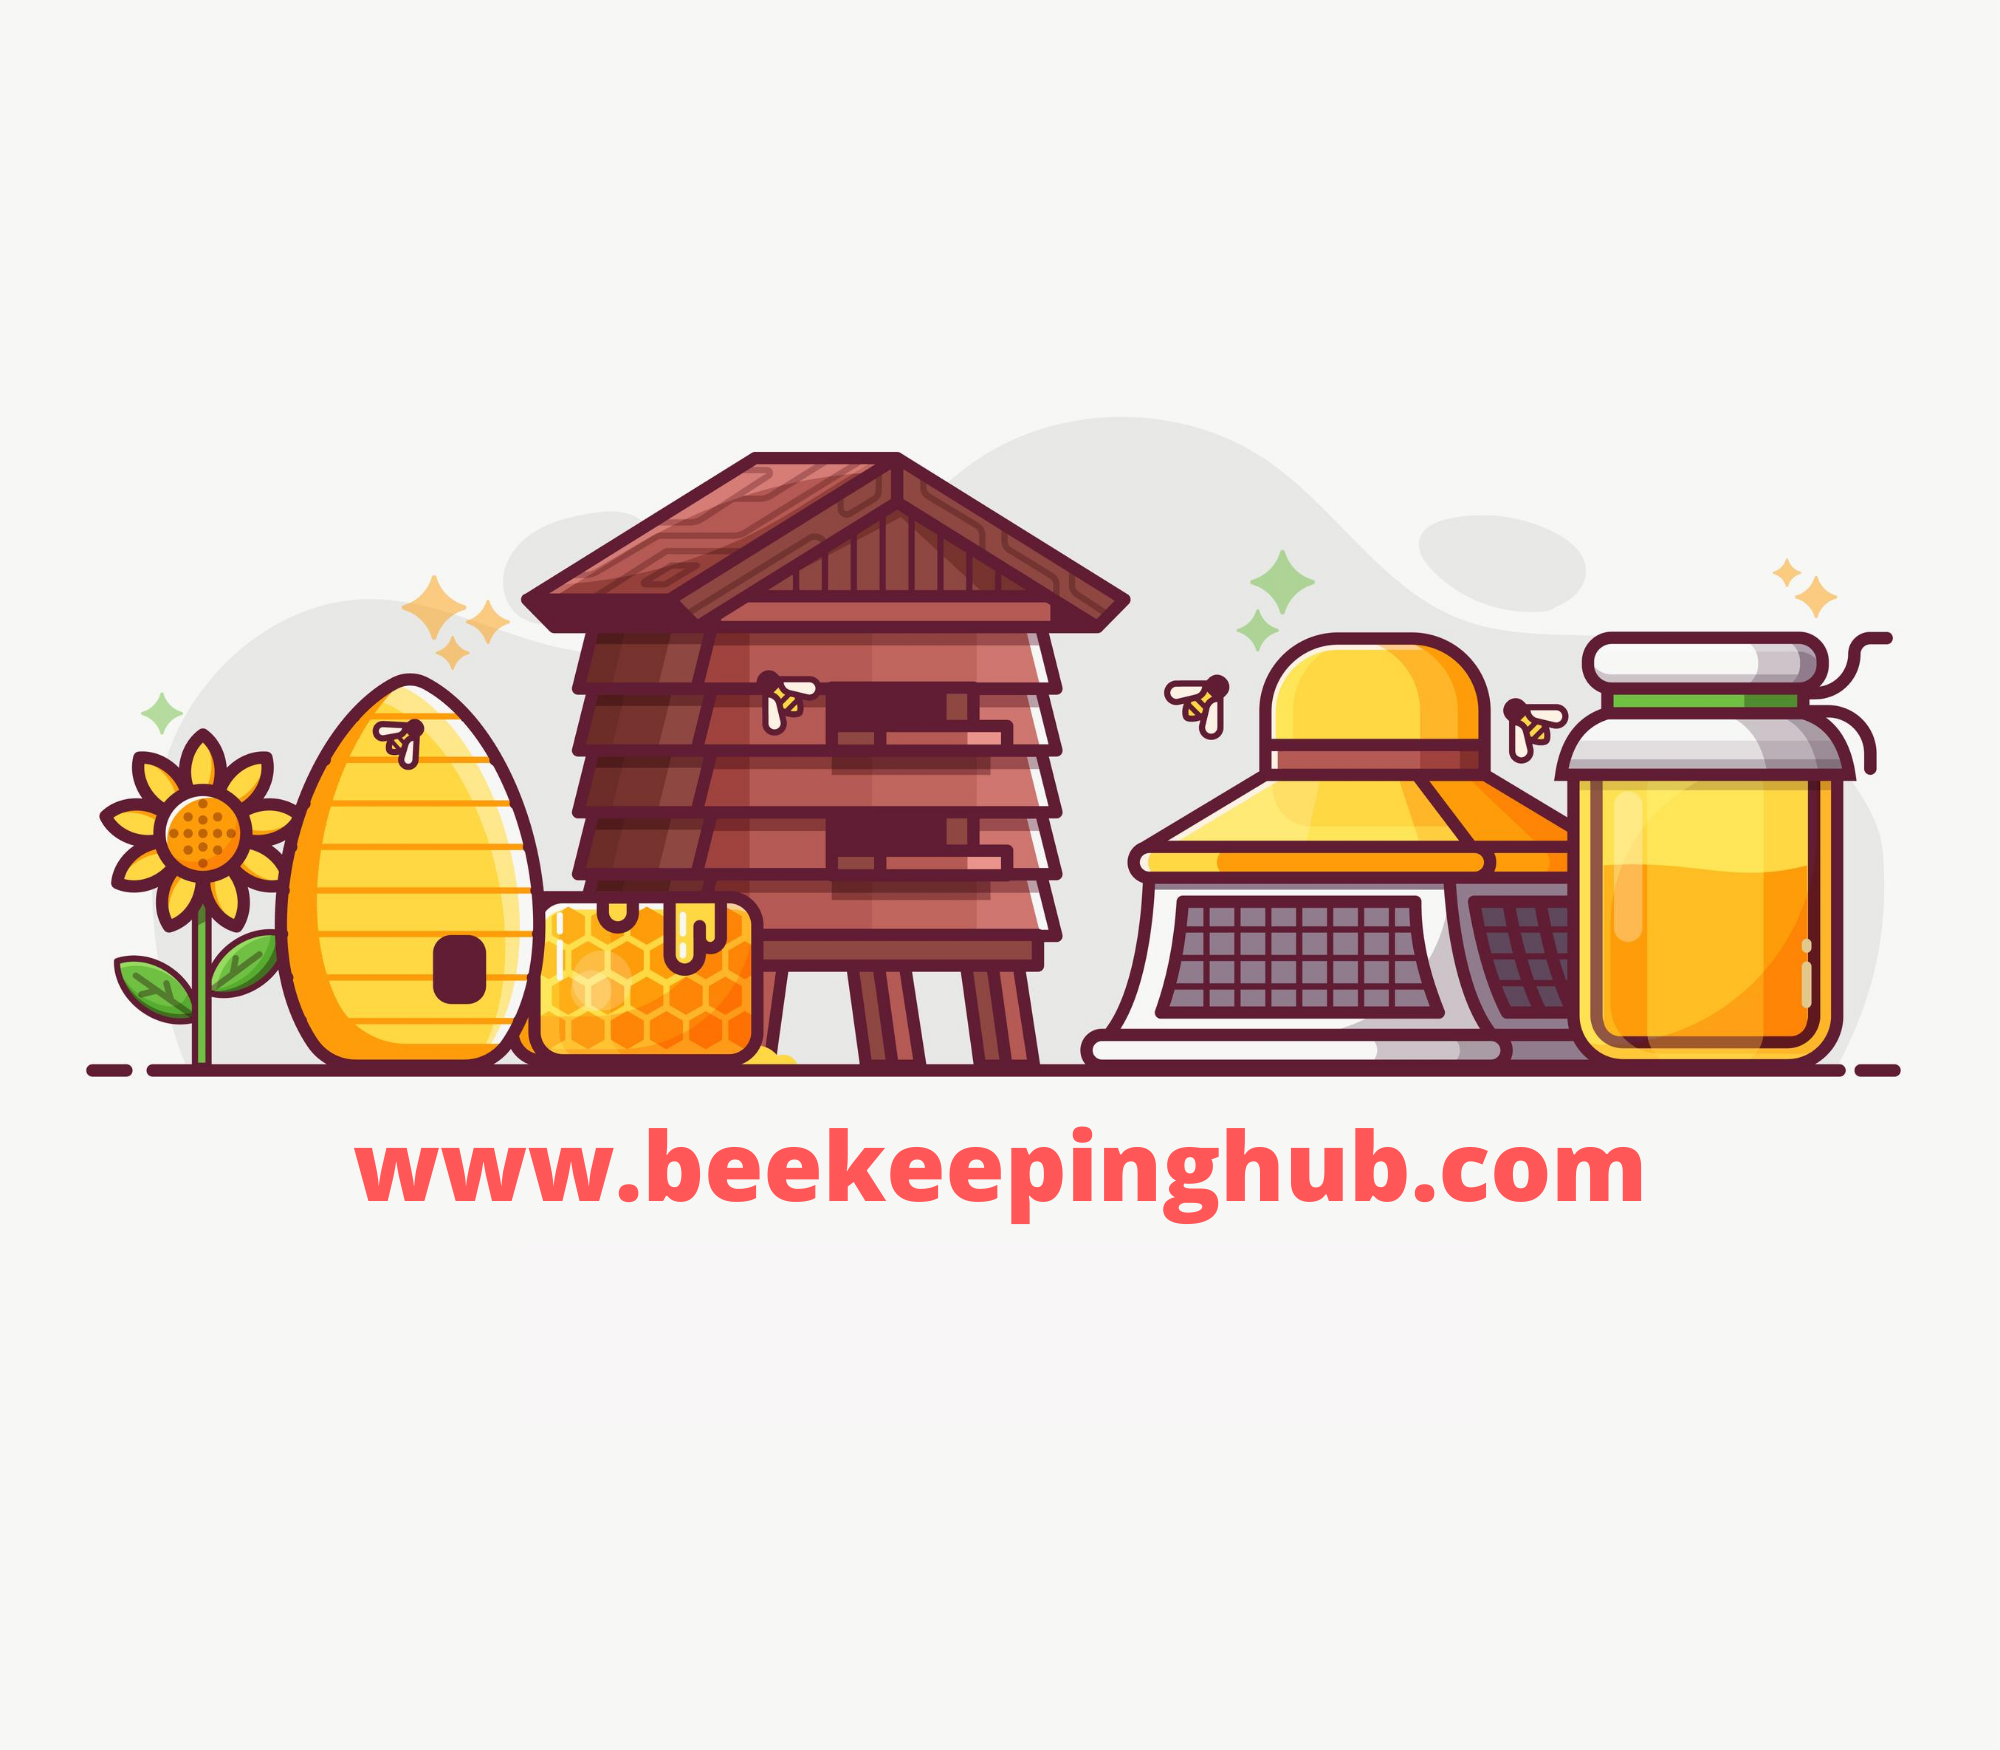 http://www.beekeepinghub.com